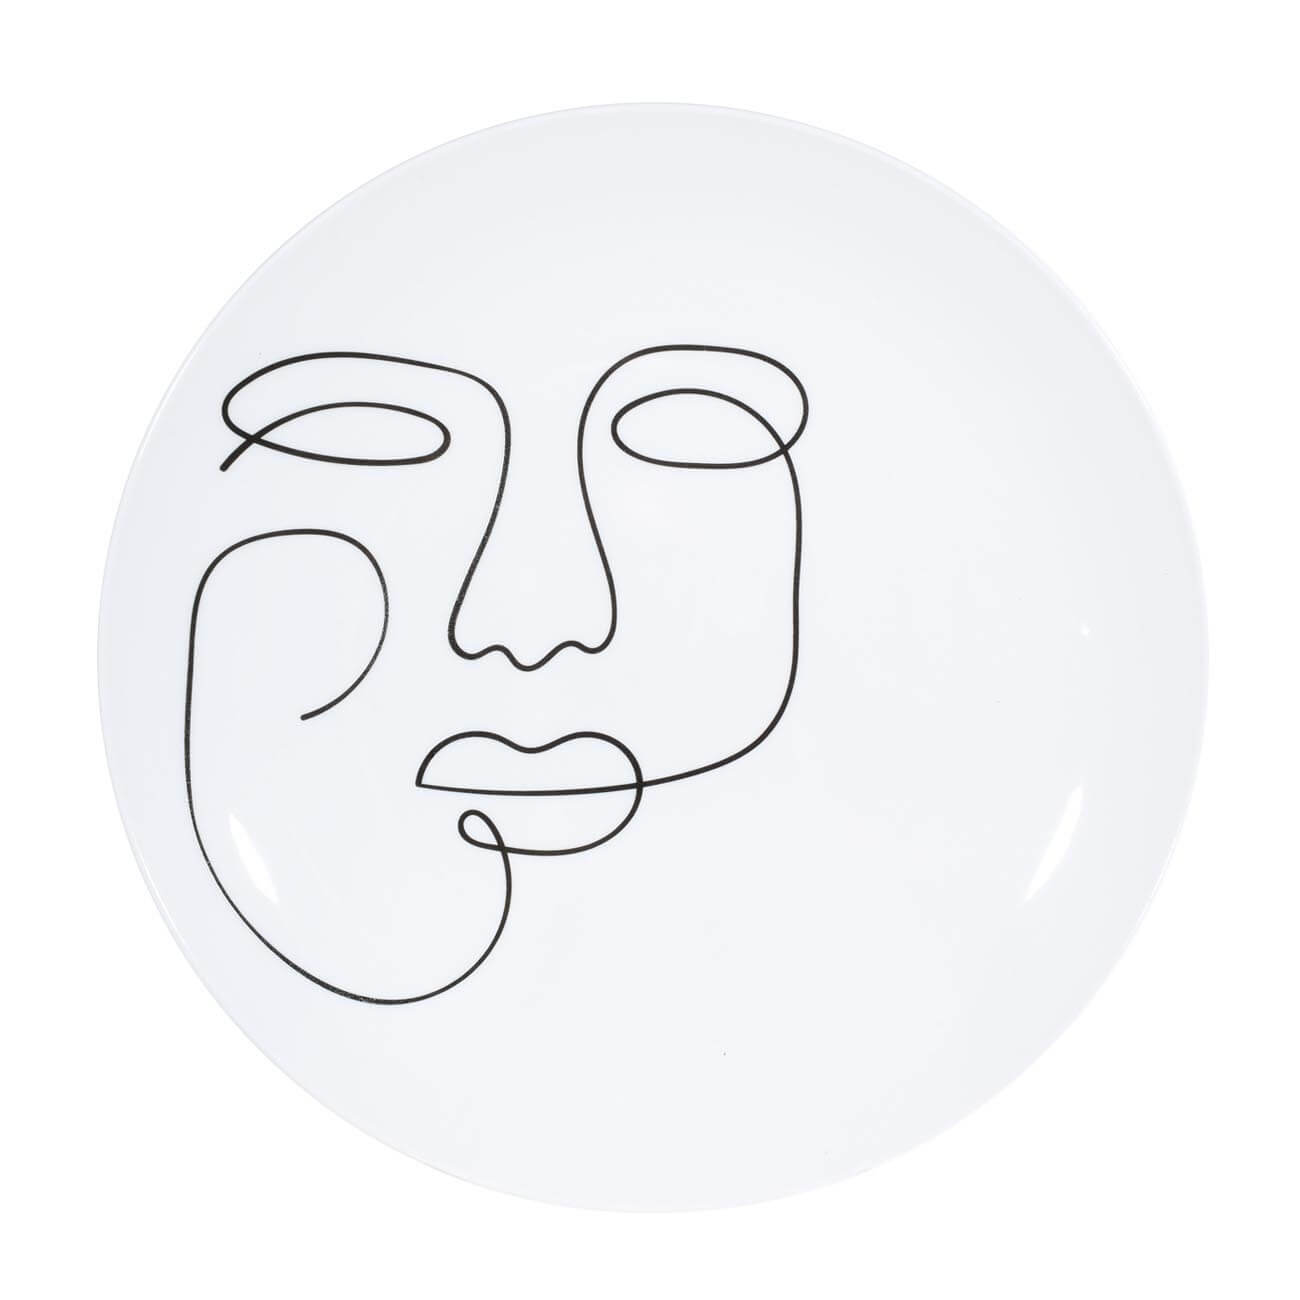 Тарелка обеденная, 27 см, 2 шт, фарфор N, белая, Контурное лицо, Face тарелка керамическая обеденная 550 мл 20 см серая 1 сорт иран